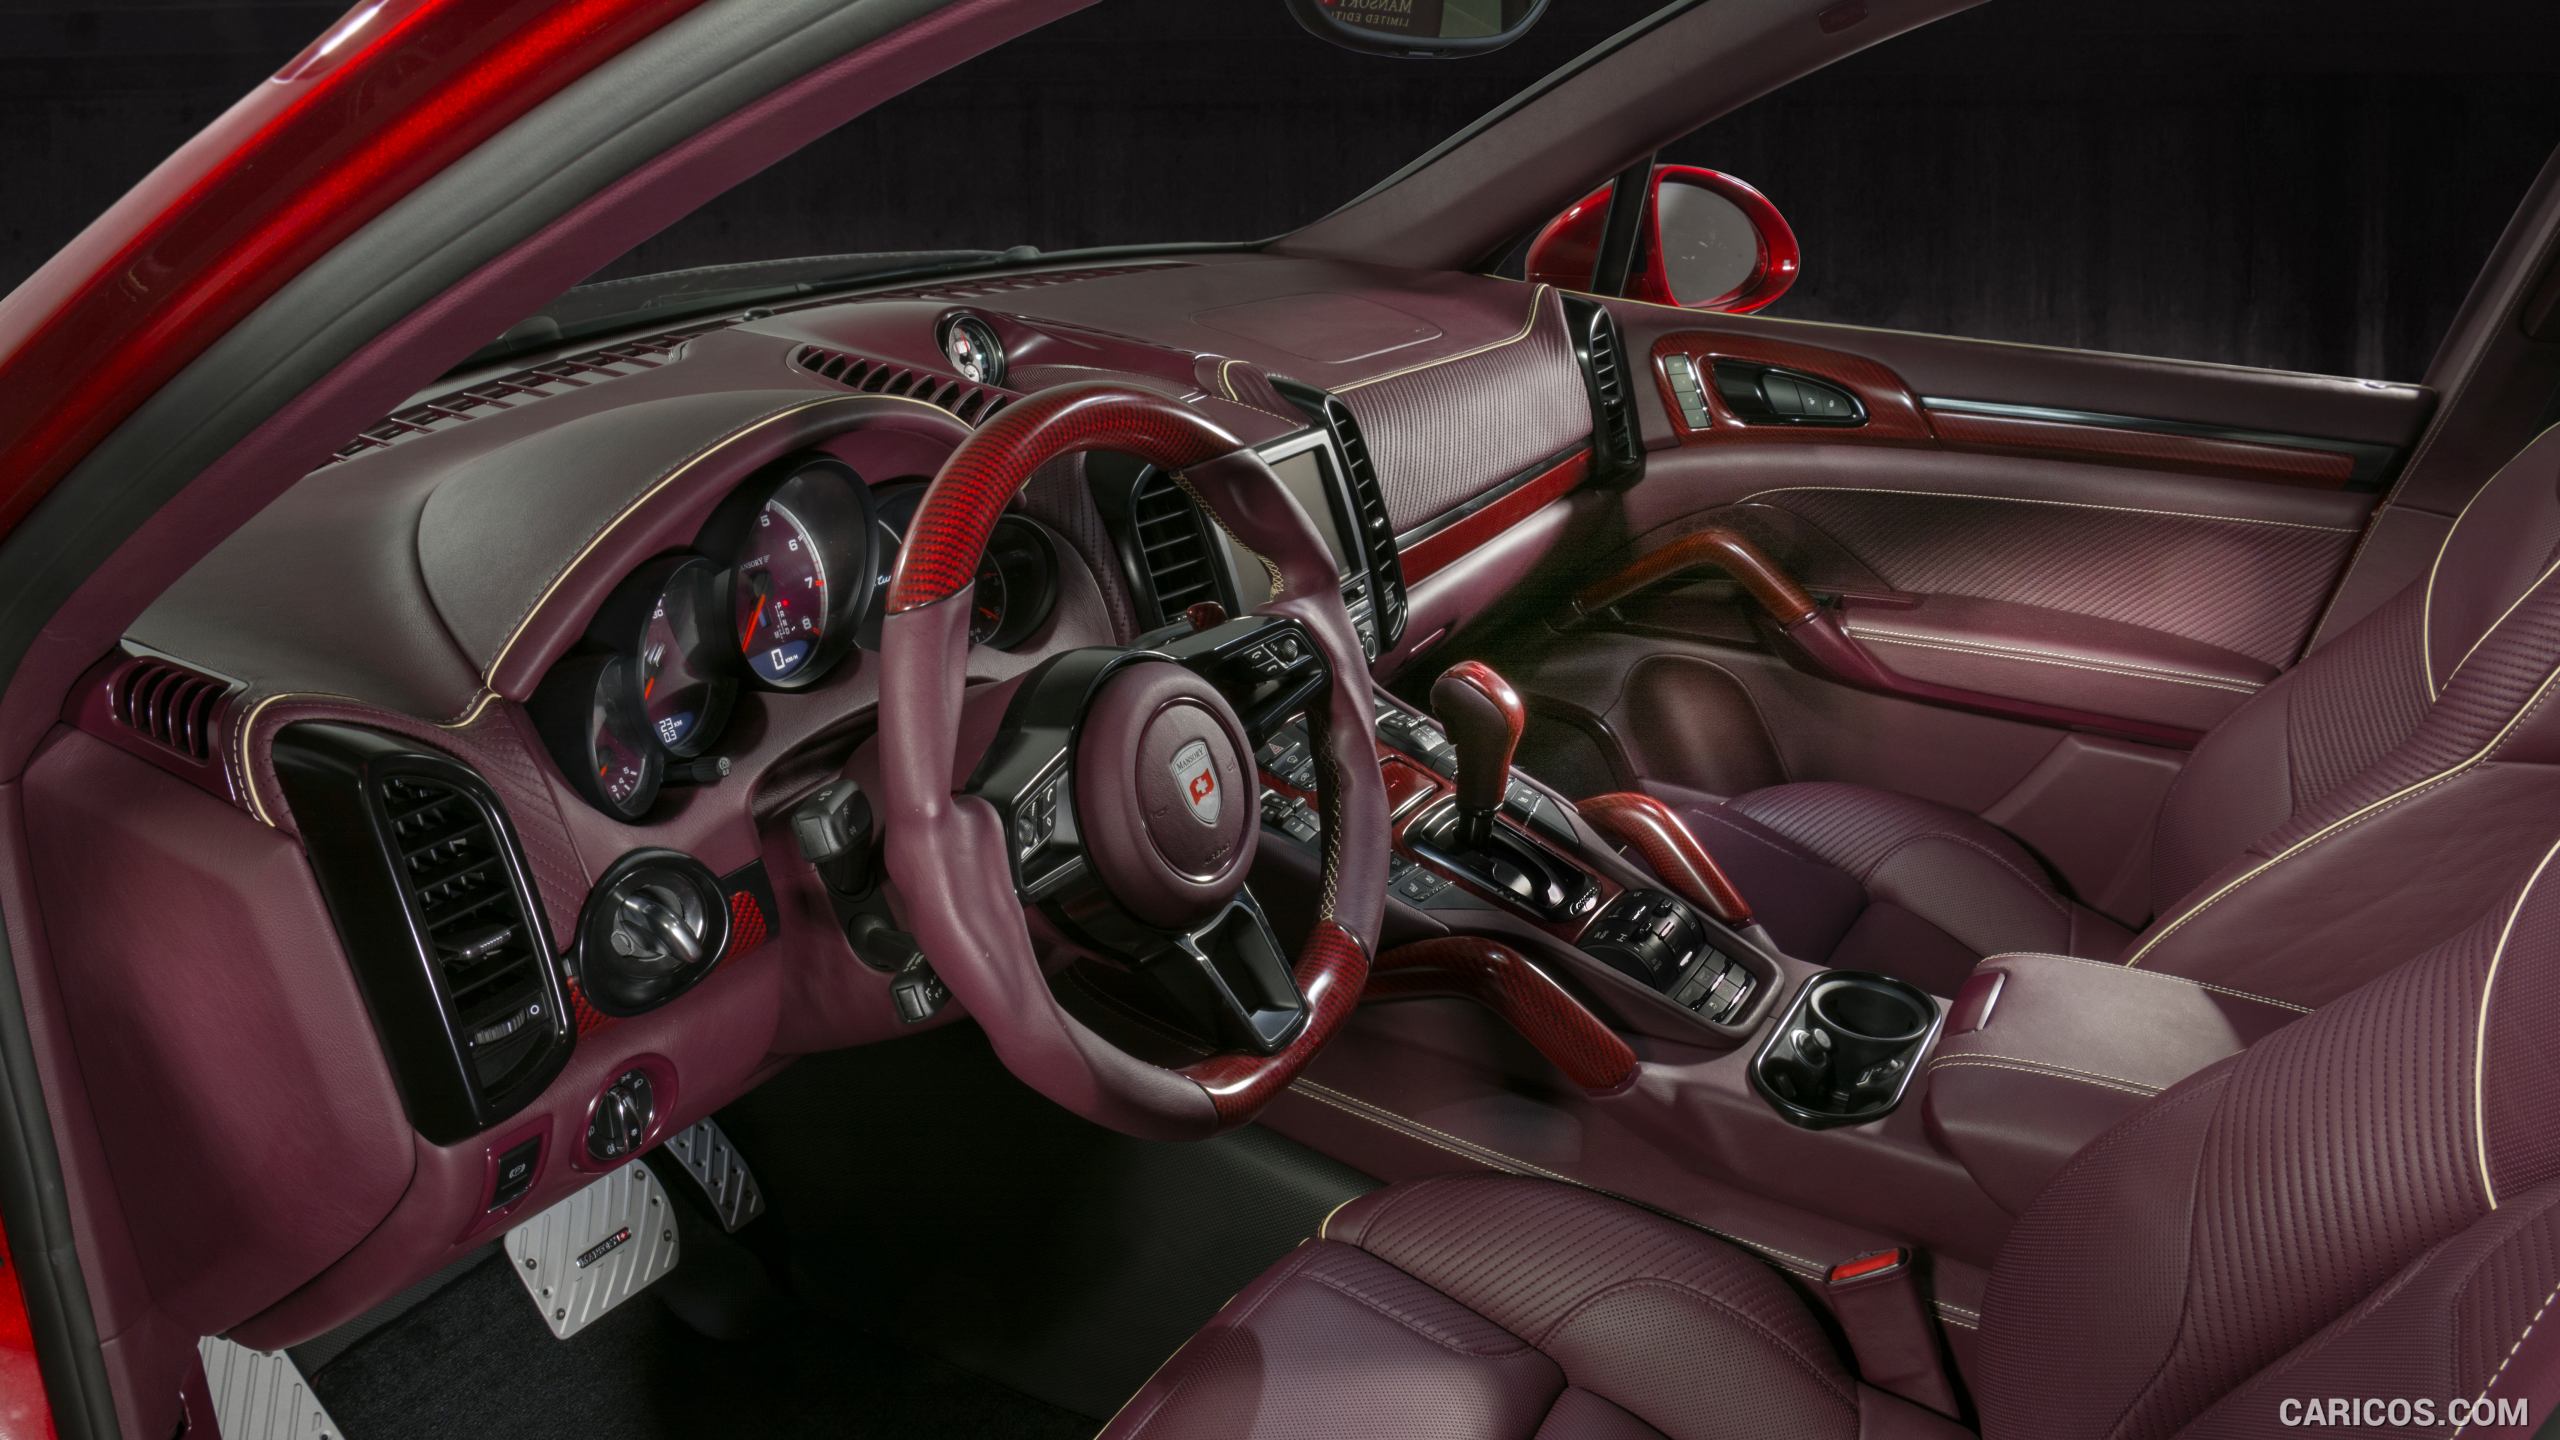 2015 Mansory Porsche Cayenne Turbo - Interior, #6 of 15